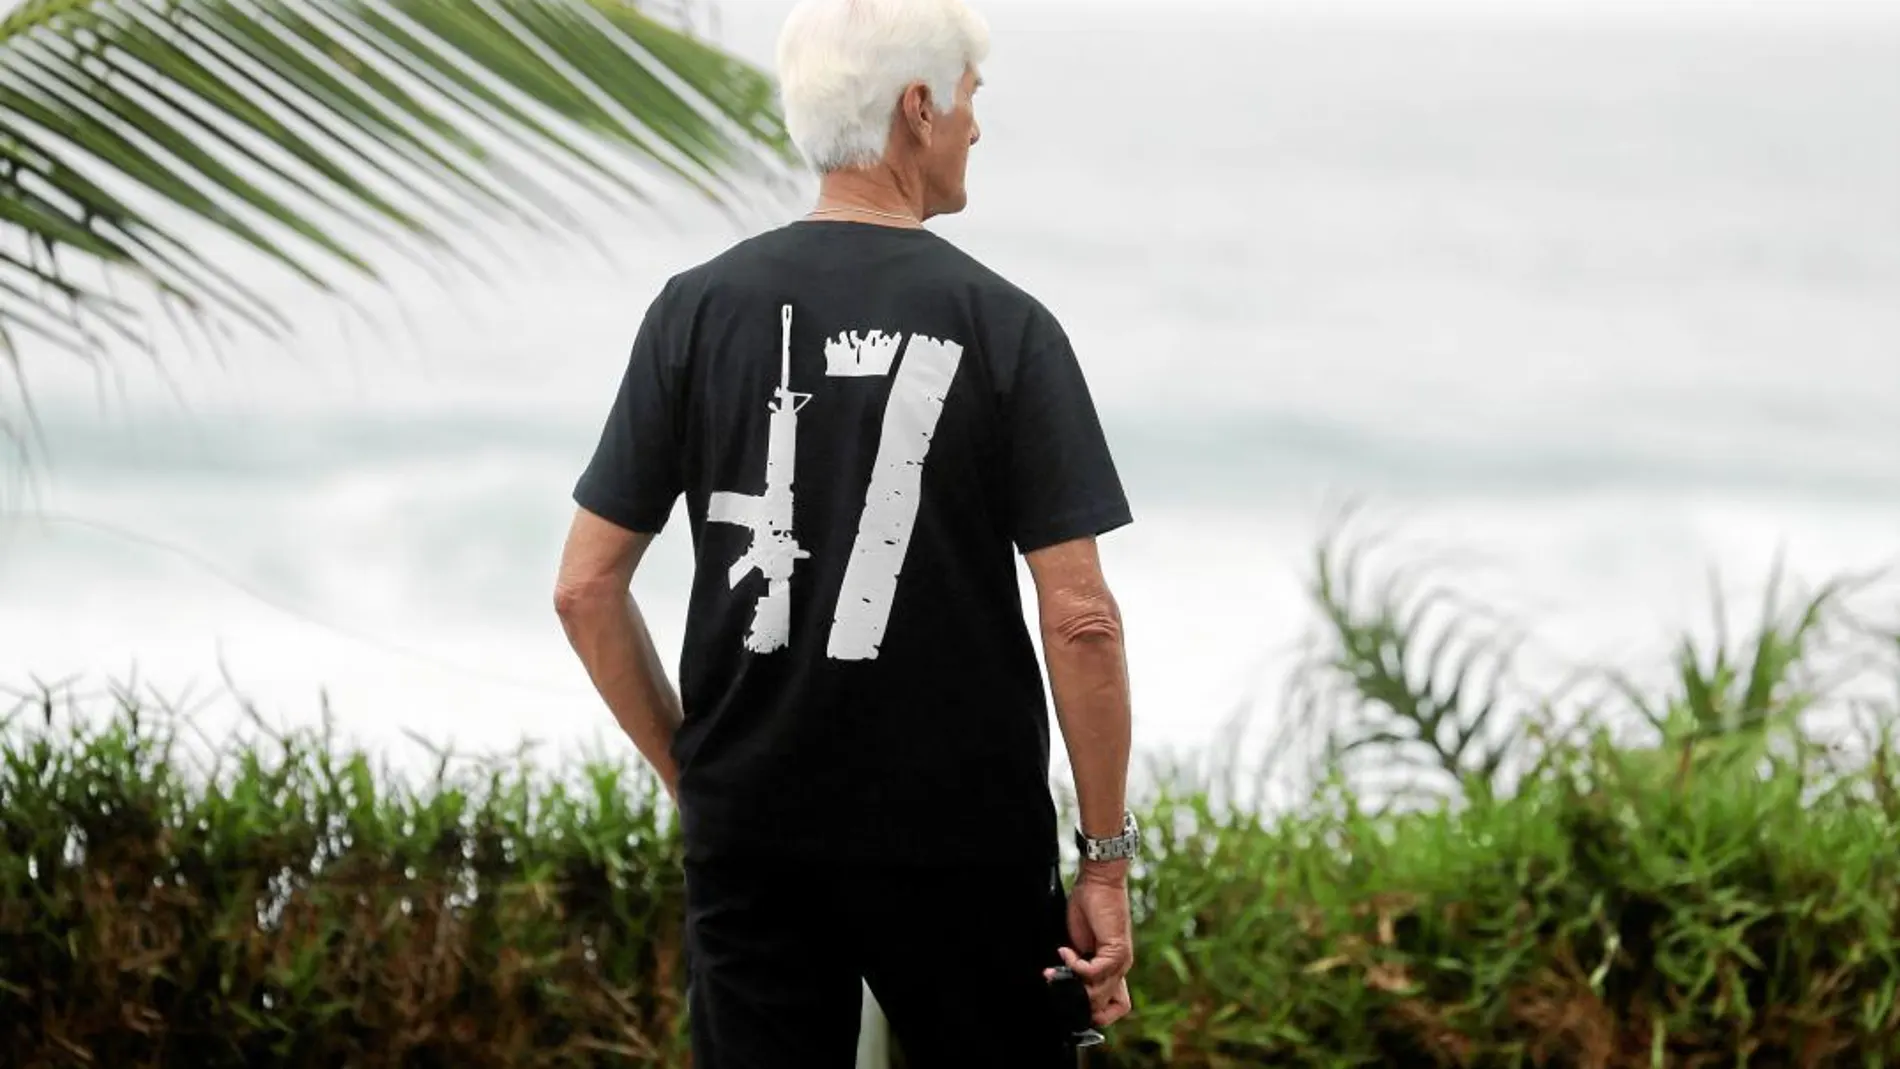 En las inmediaciones de Barra da Tijuca, un barrio de Río de Janeiro, un seguidor de Jair Bolsonaro luce una camiseta con el símbolo de un arma y el número 17, que hace referencia al número asignado a su partido (PSL) en las máquinas de votación